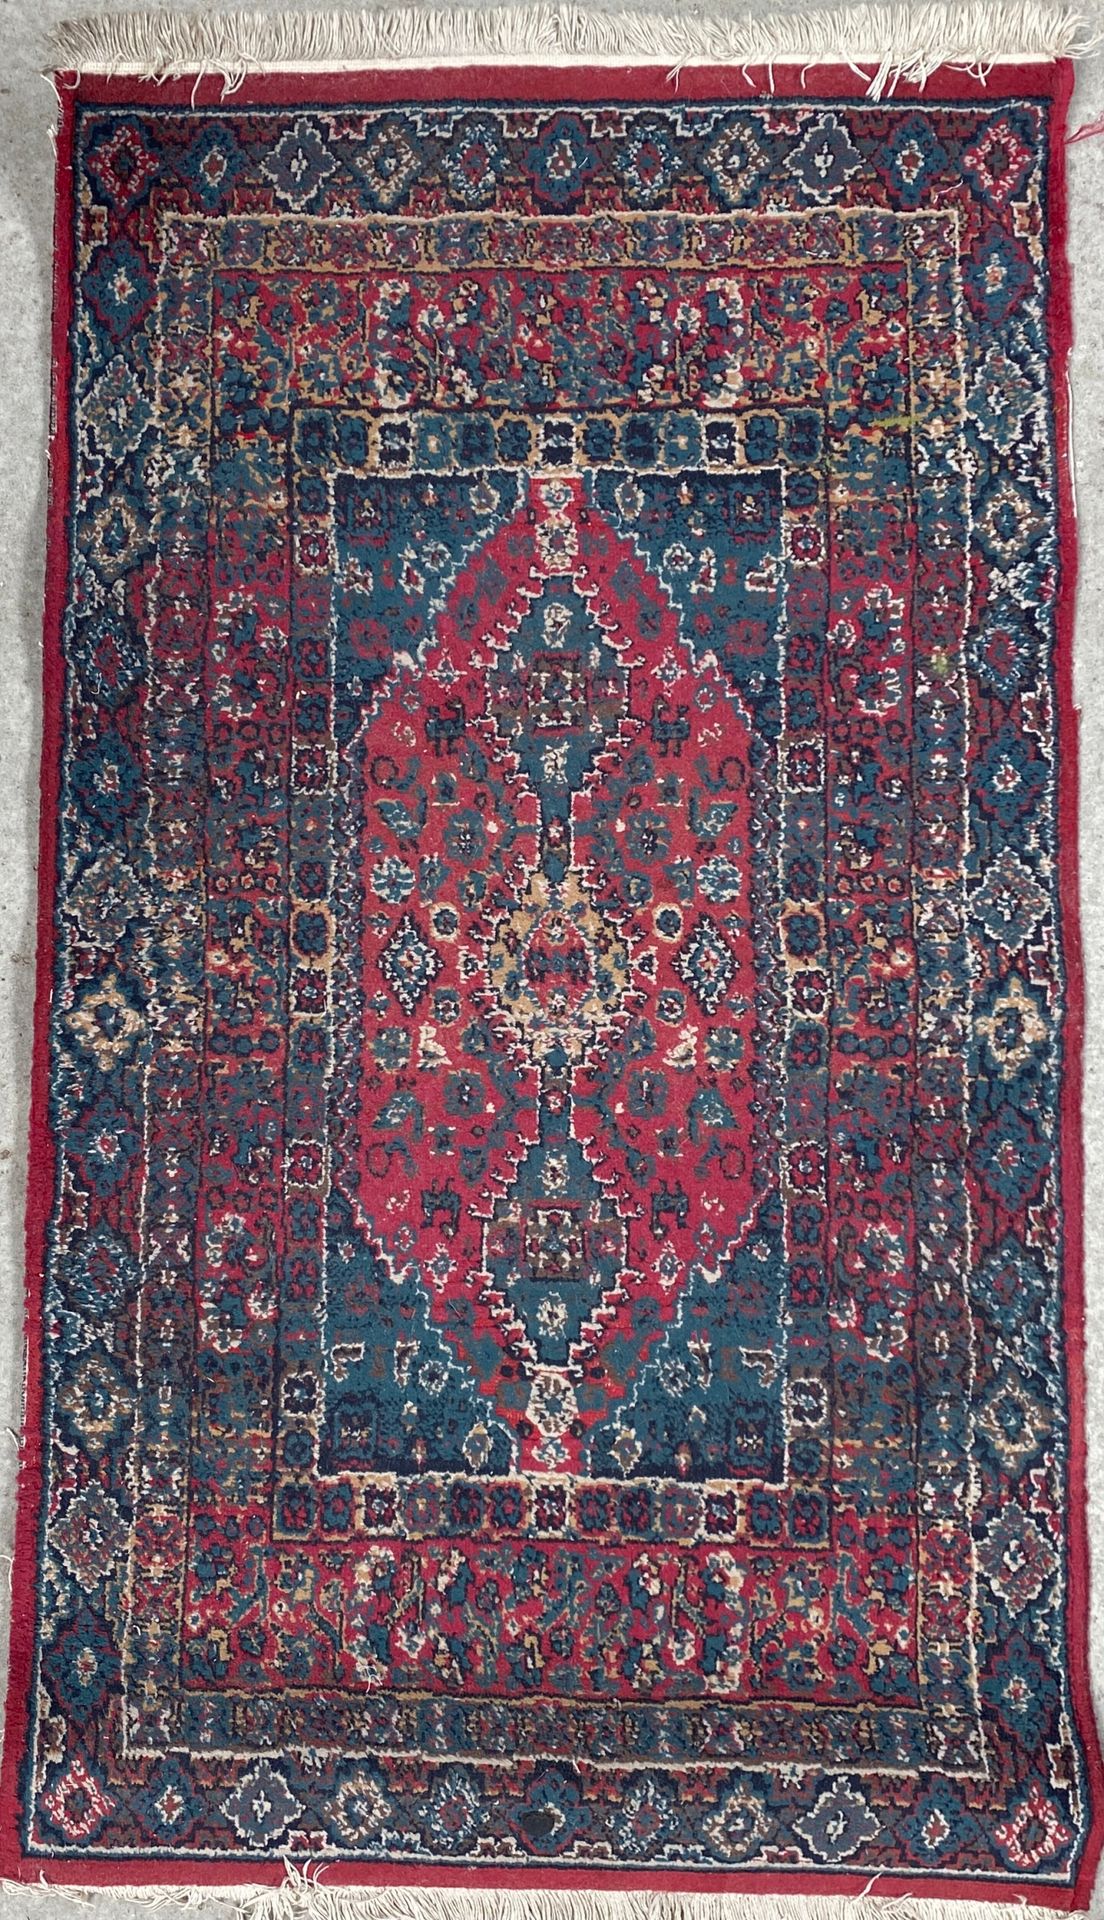 Null 羊毛地毯，中央有一个长方形的奖章，红色背景上有一个风格化的花朵图案和蓝色的边框。具有几何图案的宽边。

80 x 145厘米

磨损的